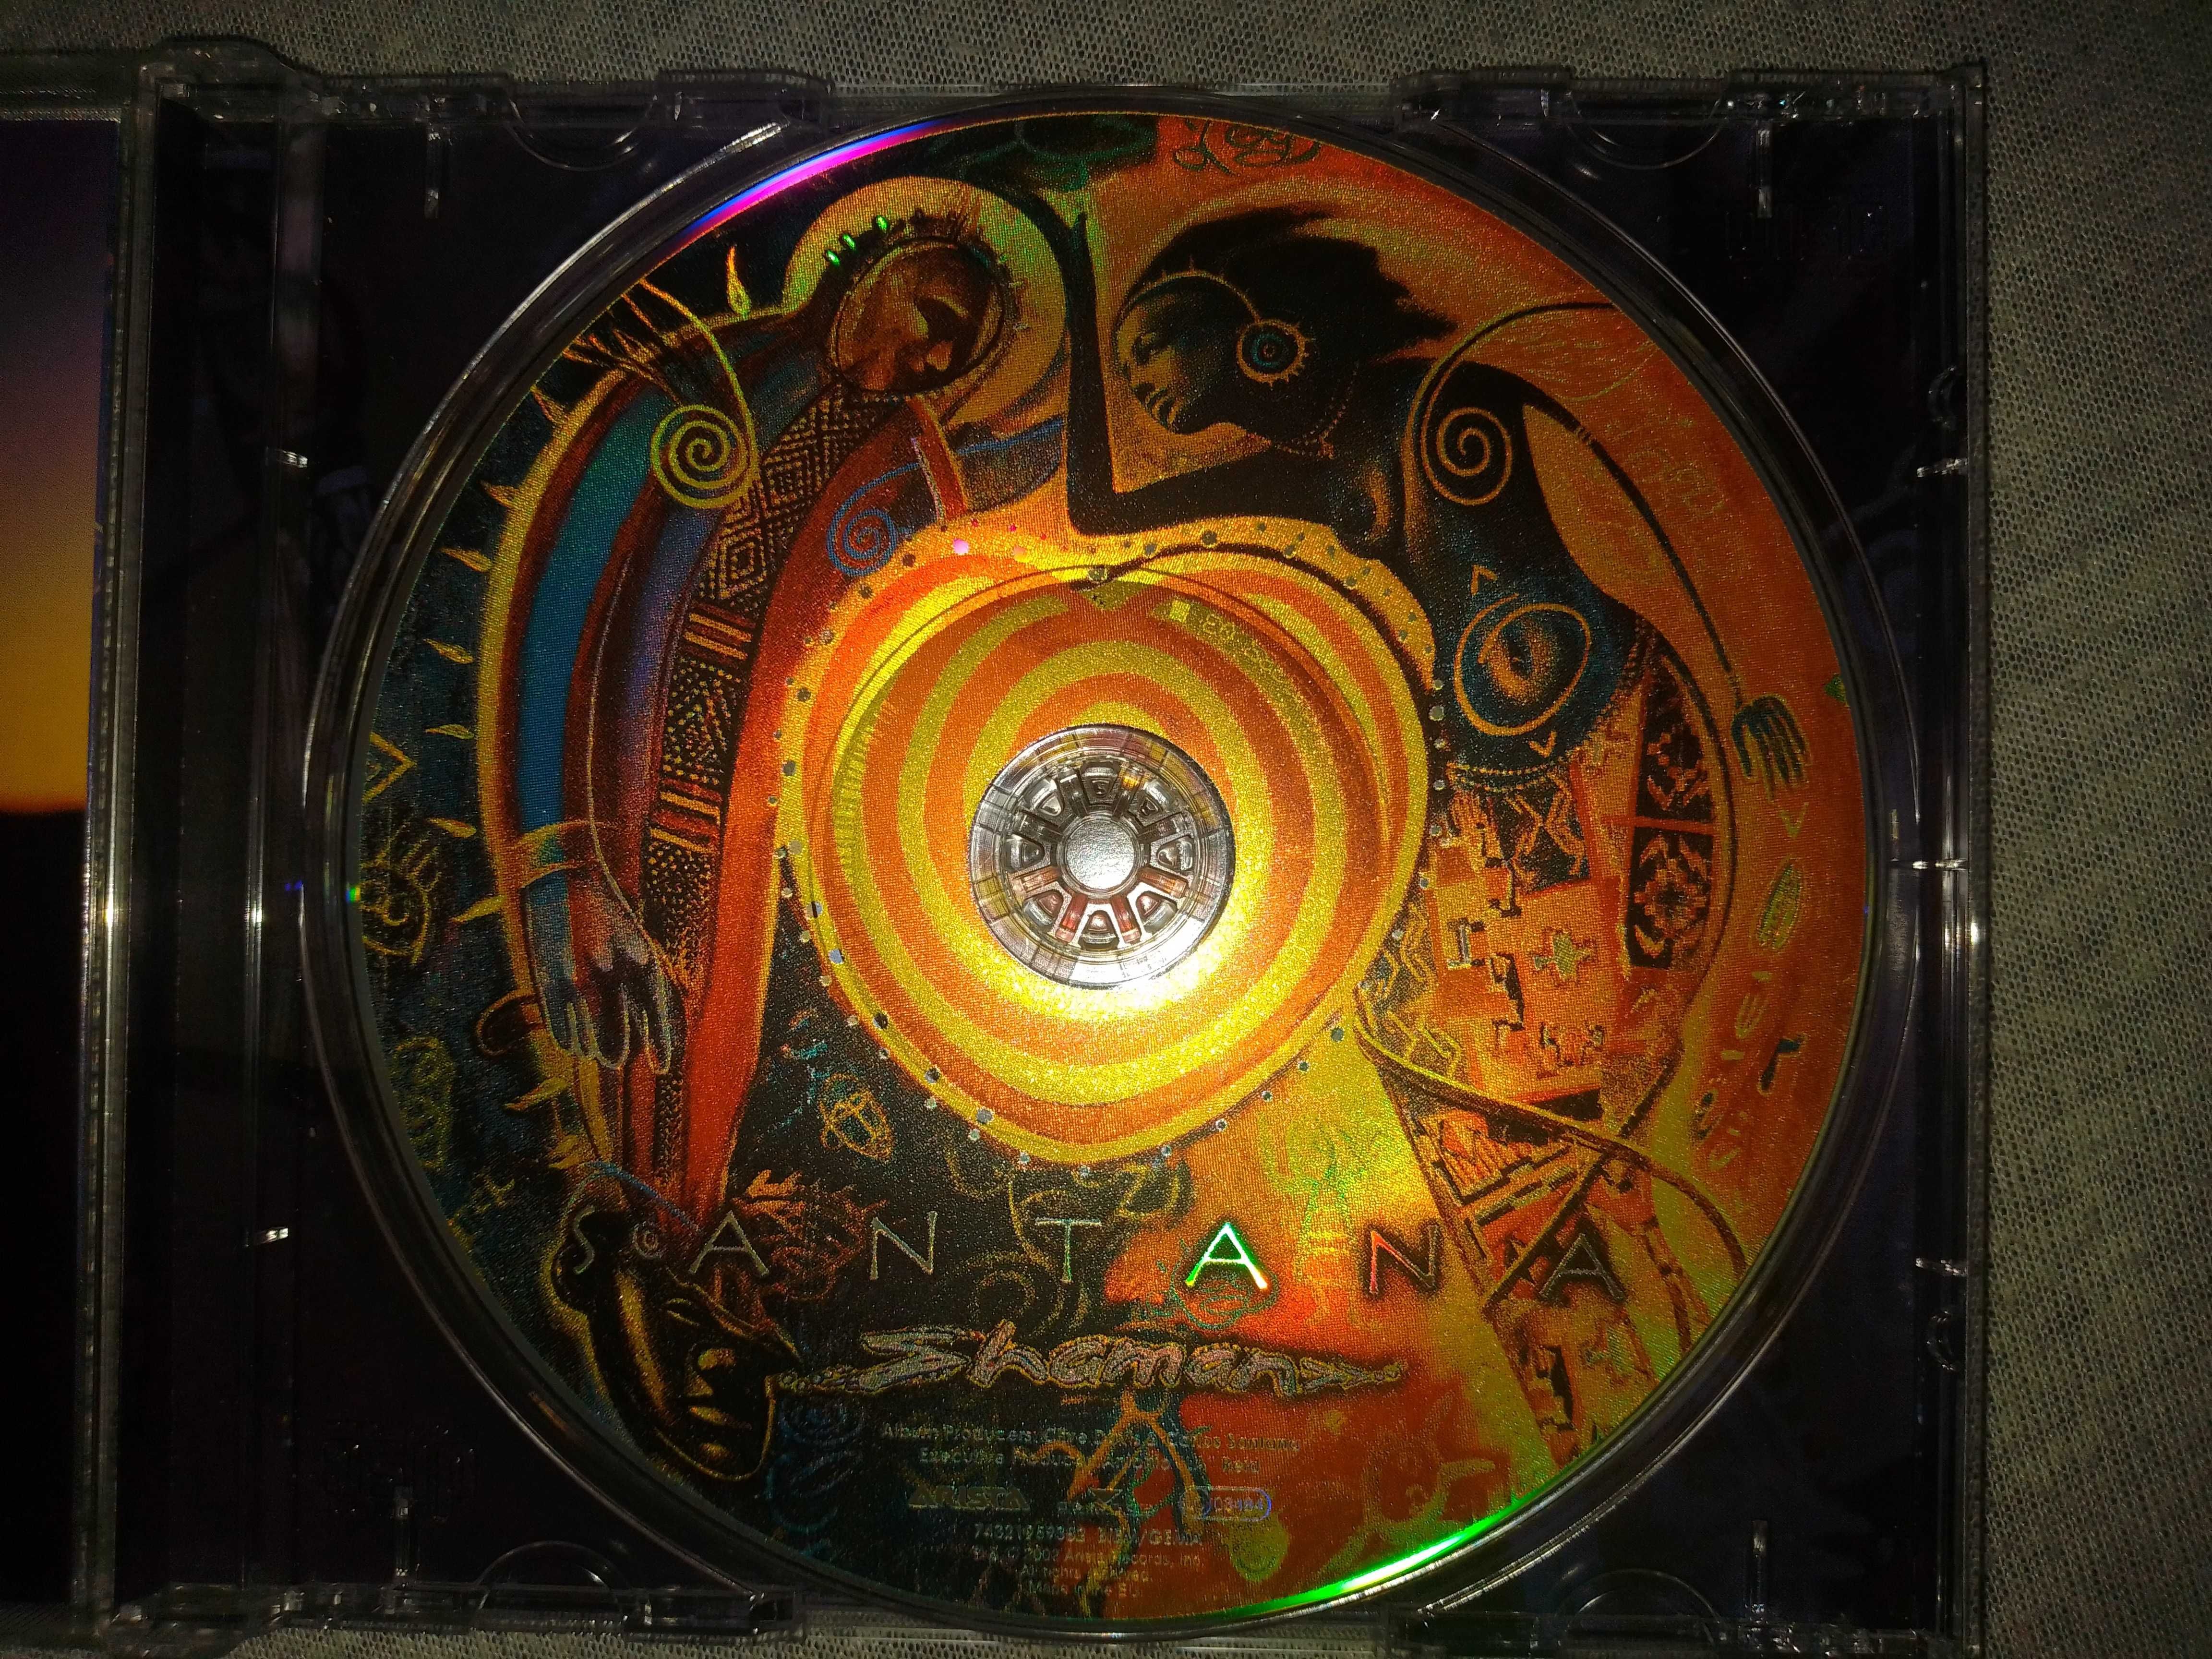 Santana "Shaman" фирменный CD Made In The EU.